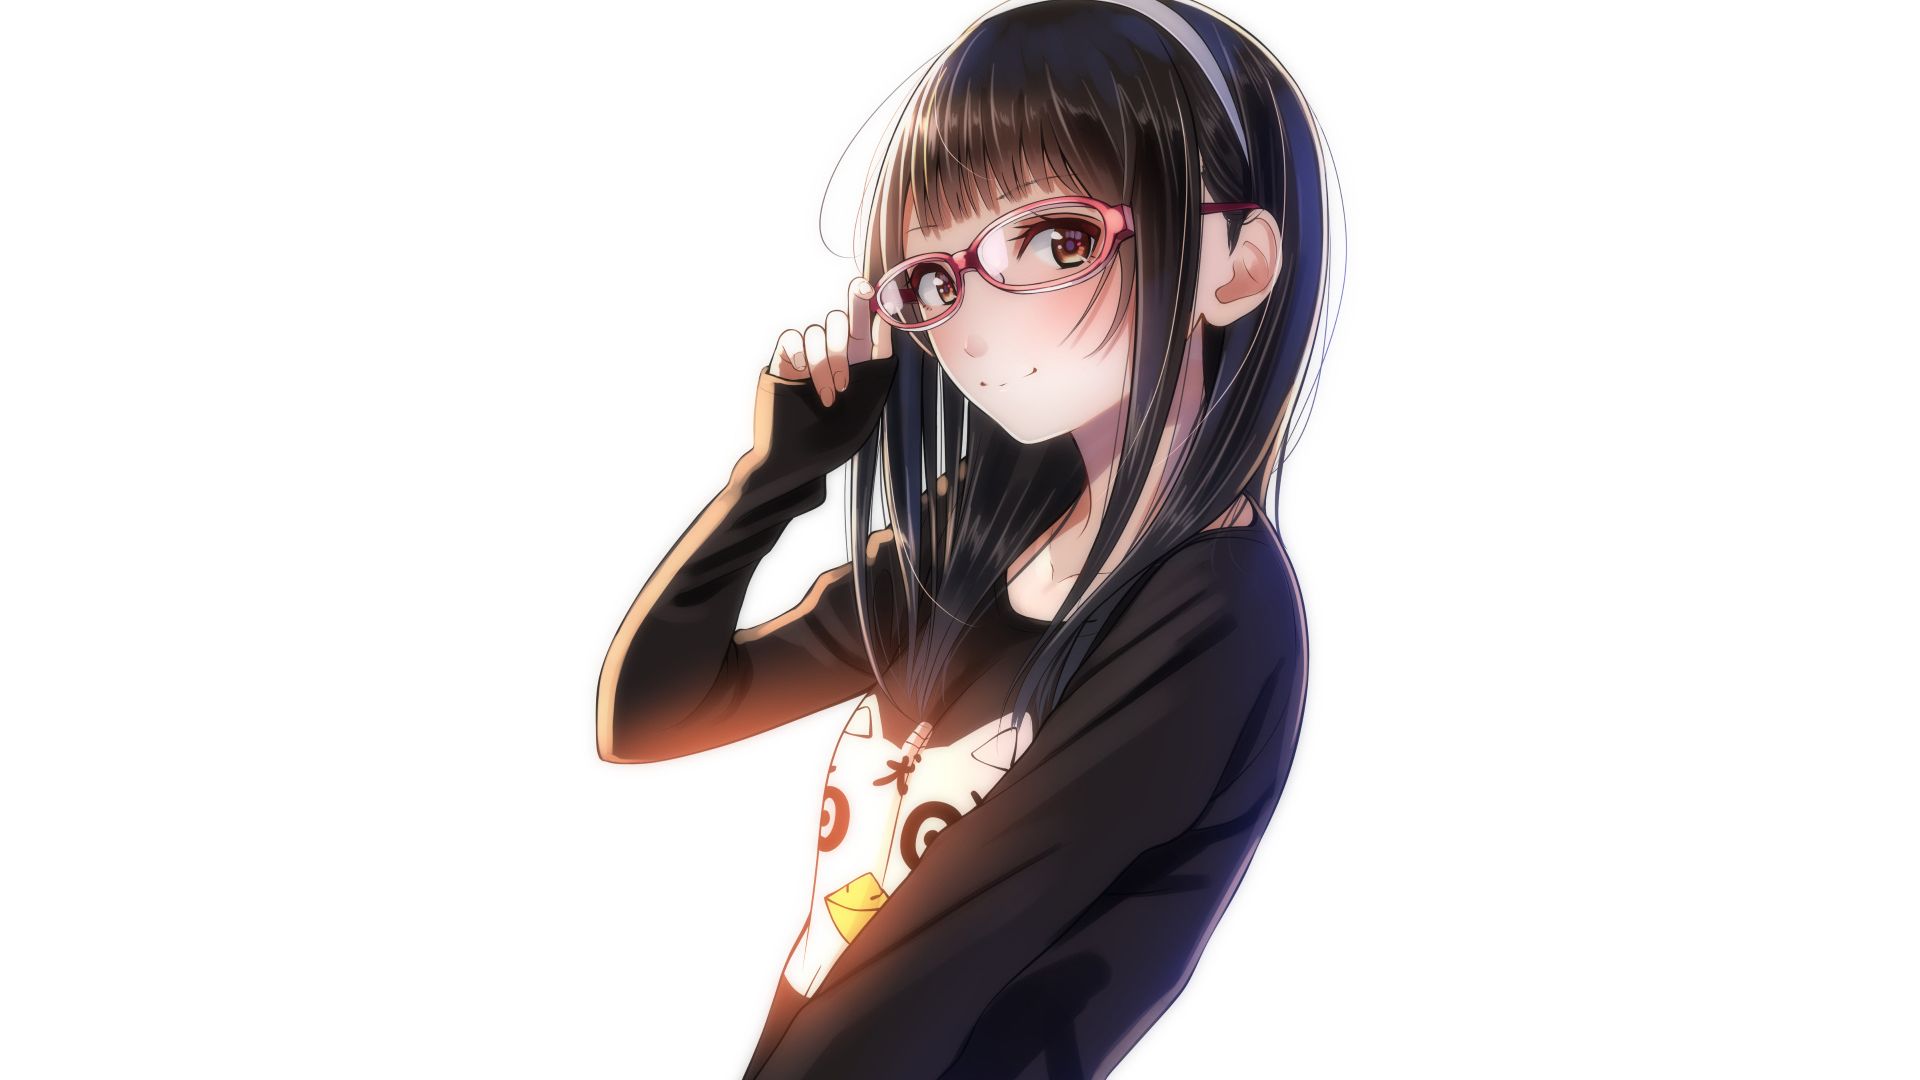 Wallpaper Urban, anime girl, glasses, original